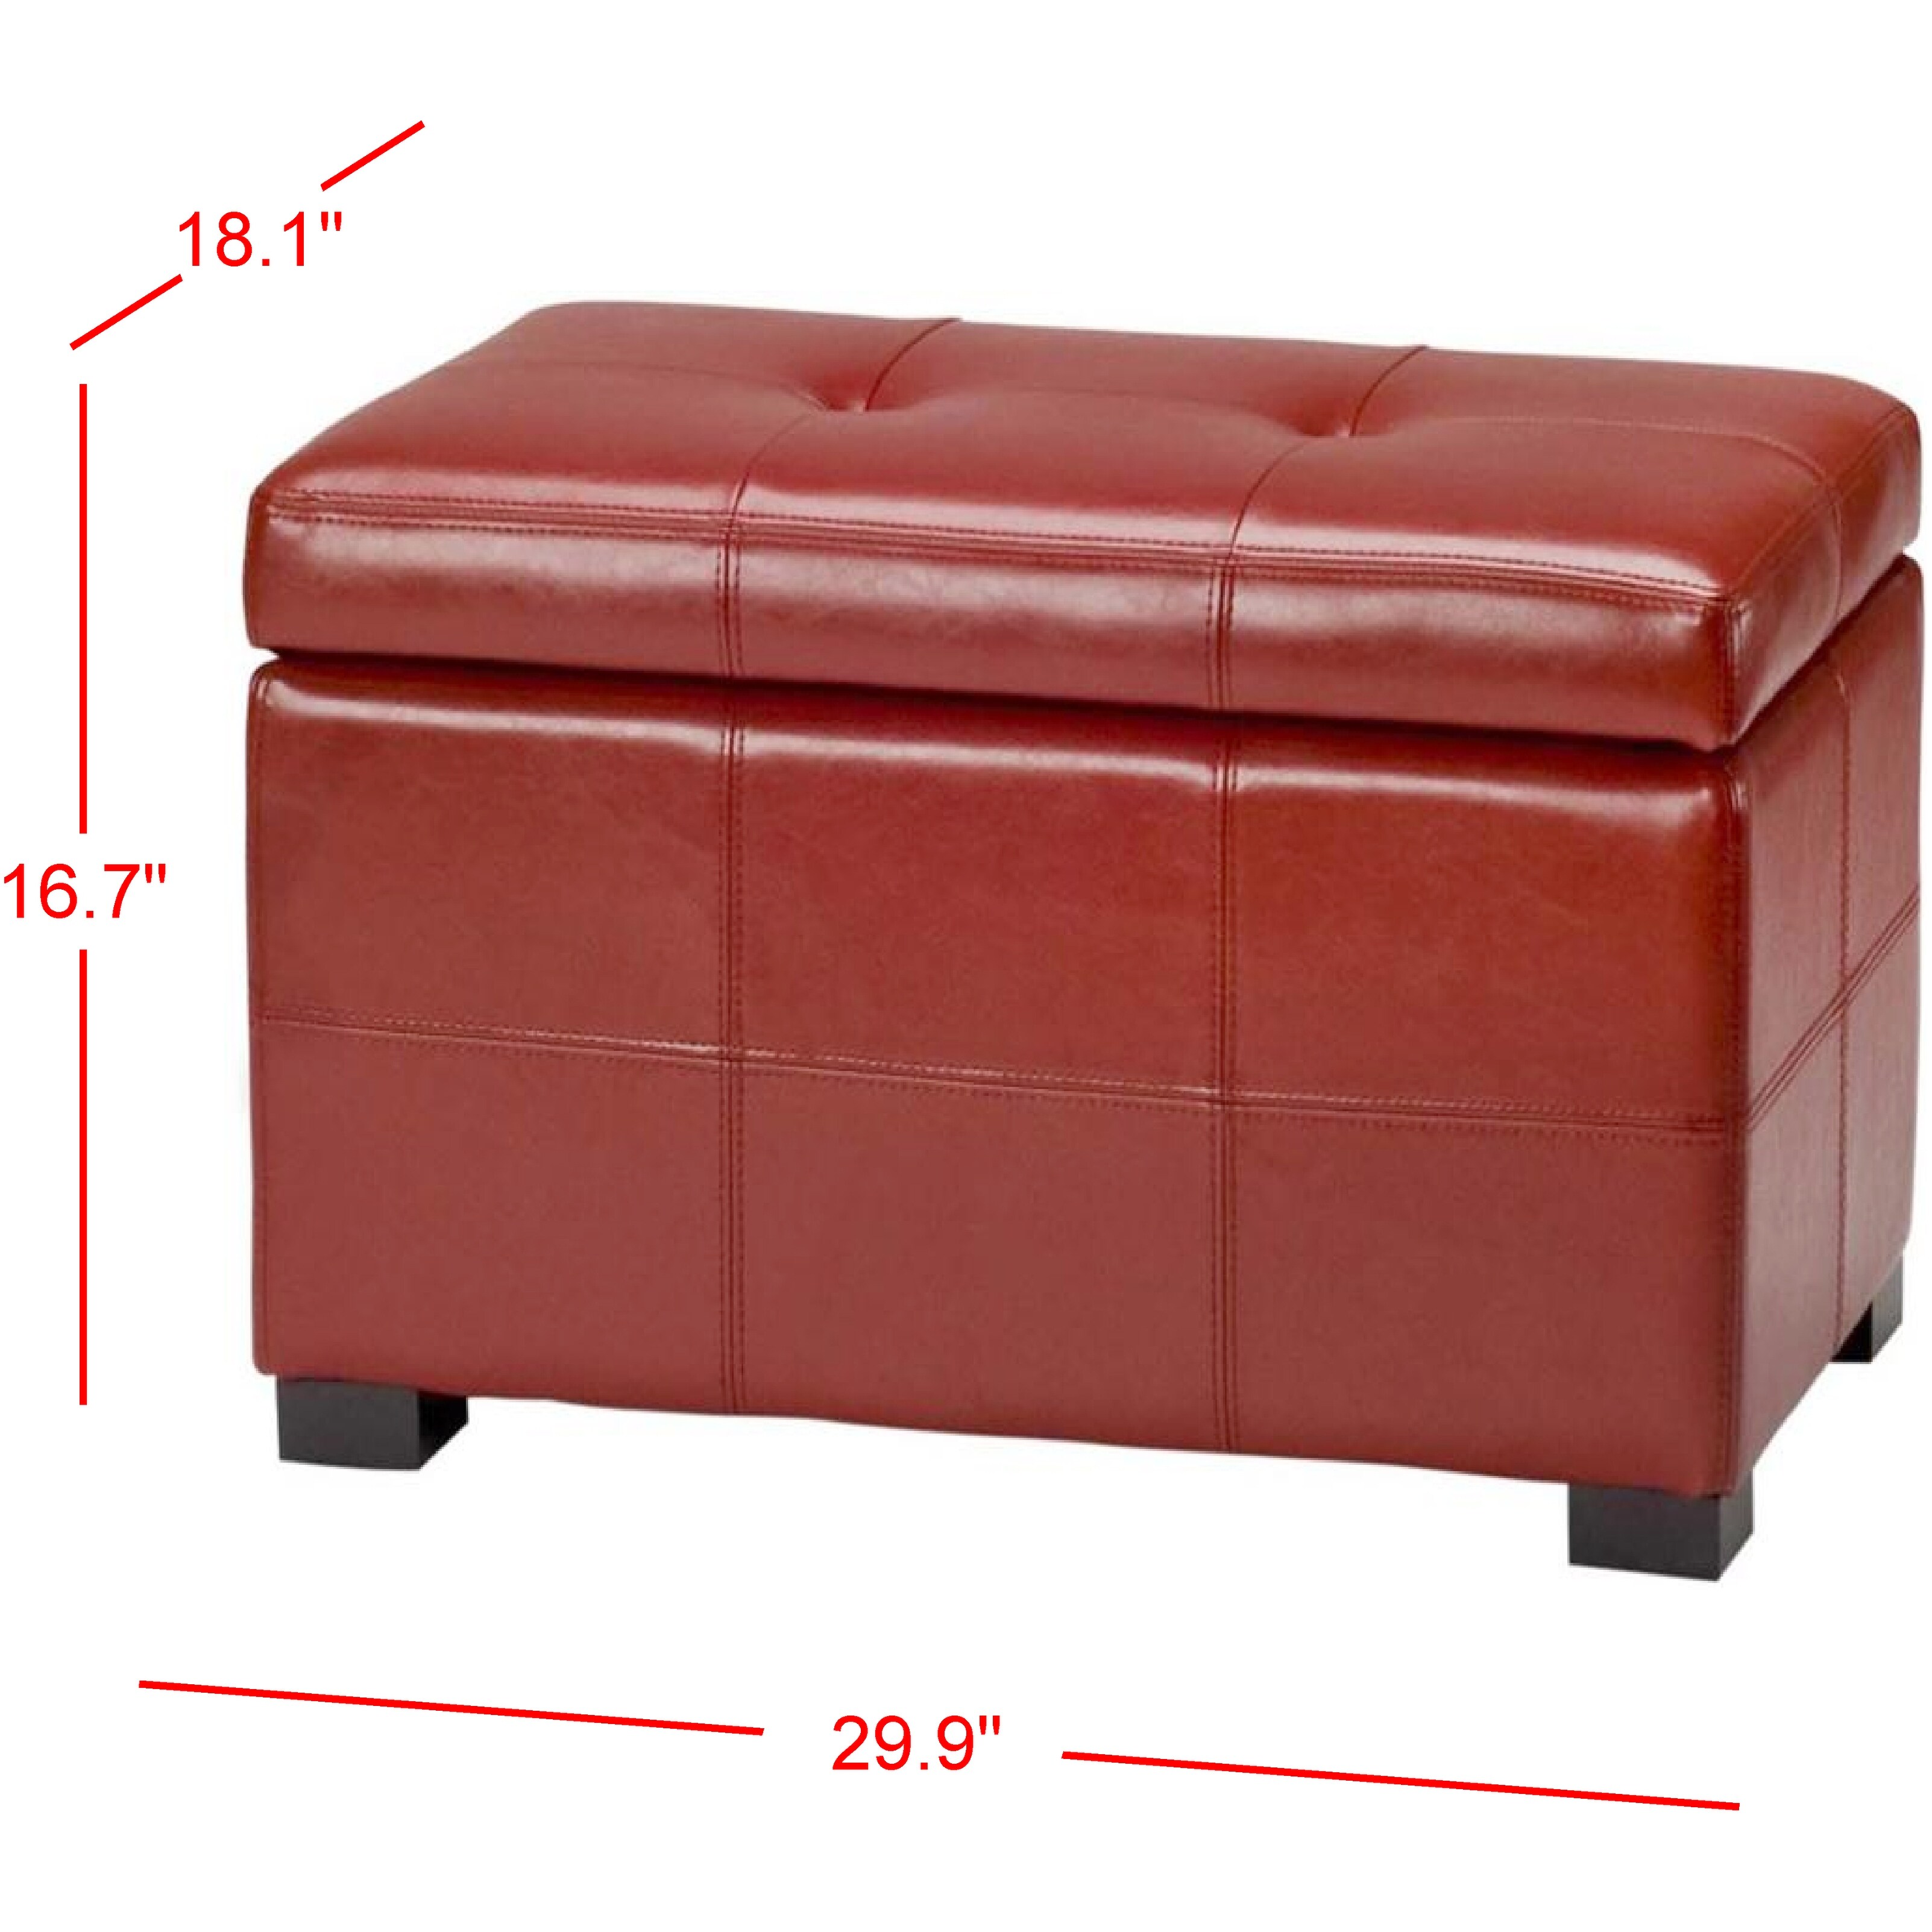 Safavieh Maiden Tufted Red Bicast Leather Storage Bench - 30.1" x 18.1" x 17.7"